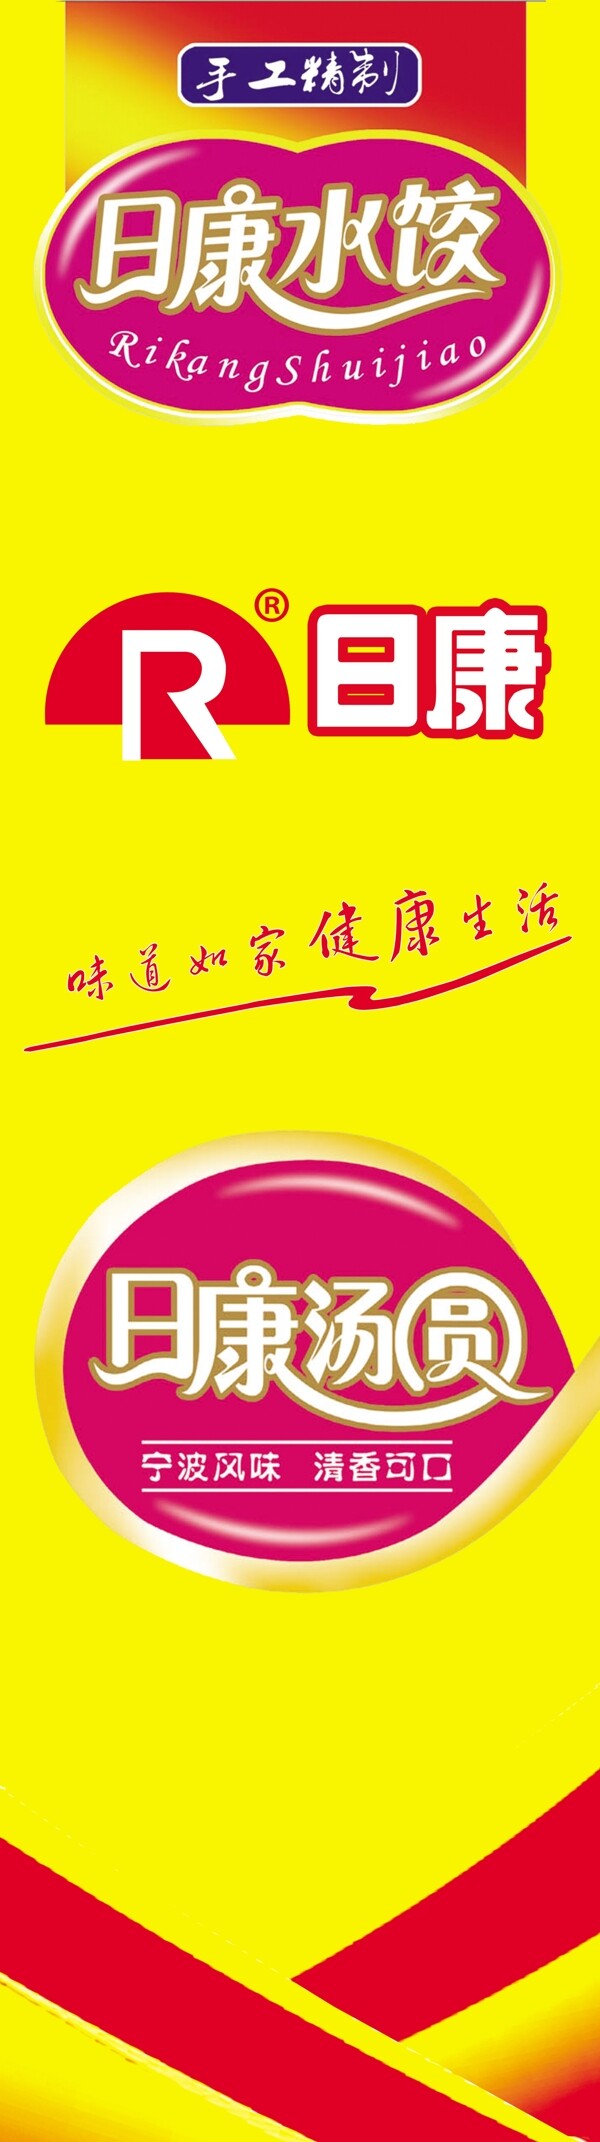 日康水饺商场包柱广告图片